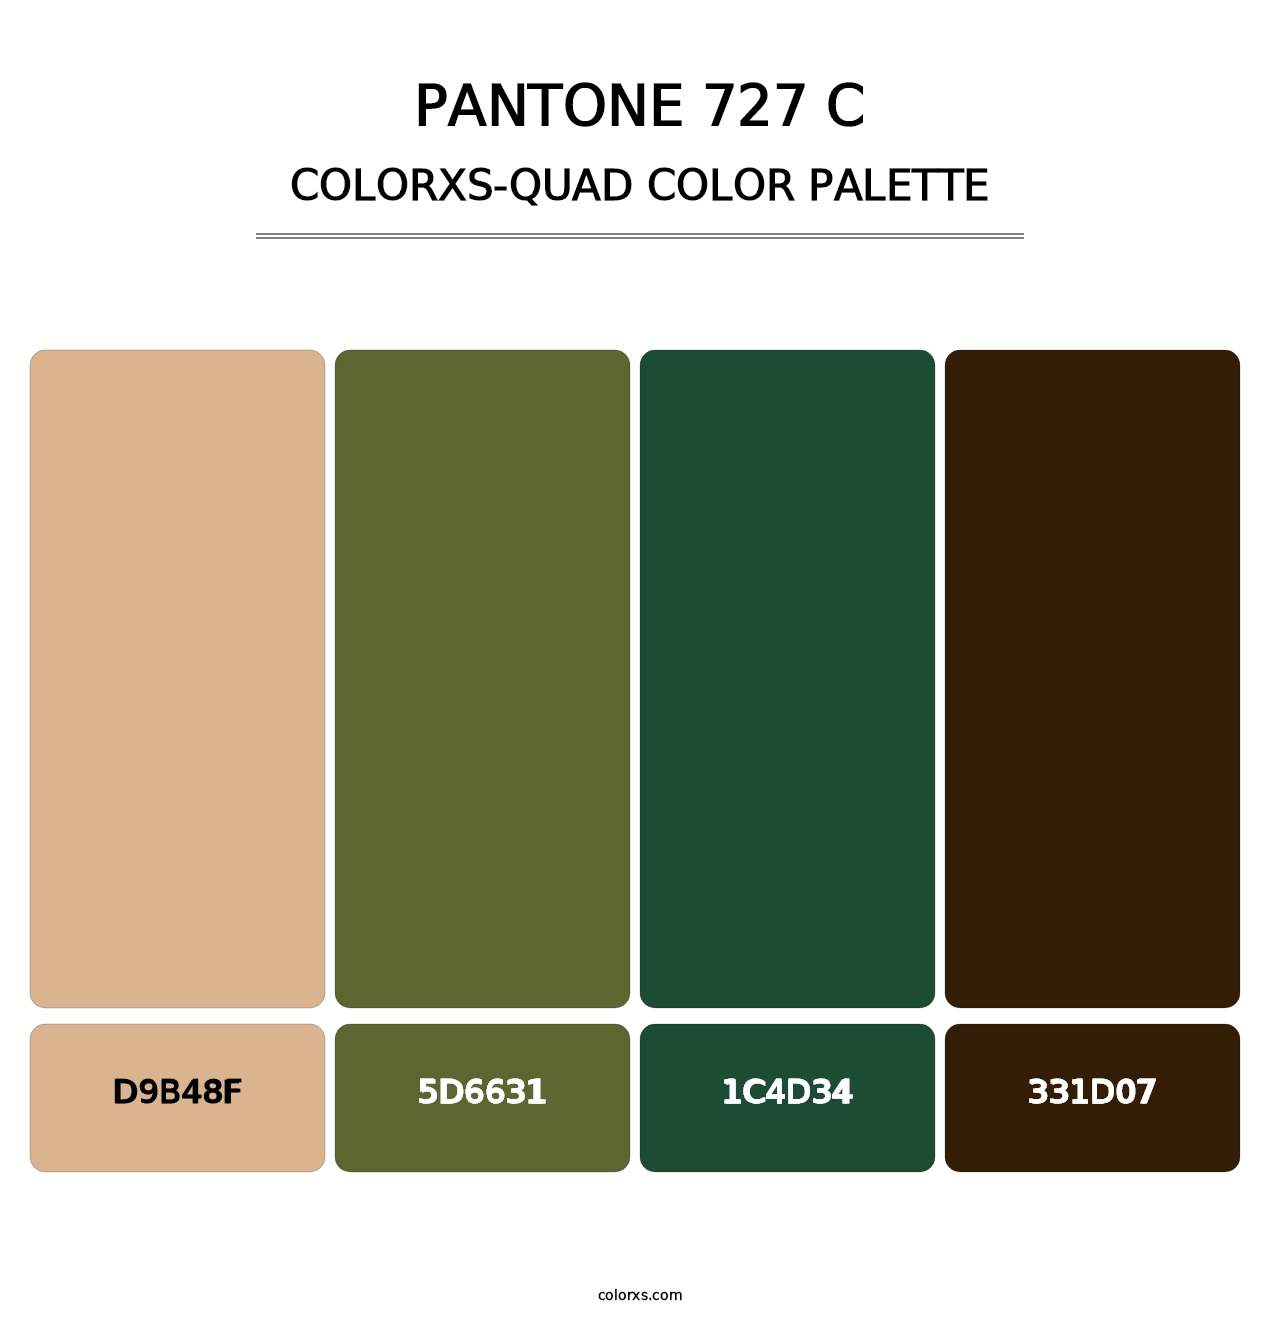 PANTONE 727 C - Colorxs Quad Palette